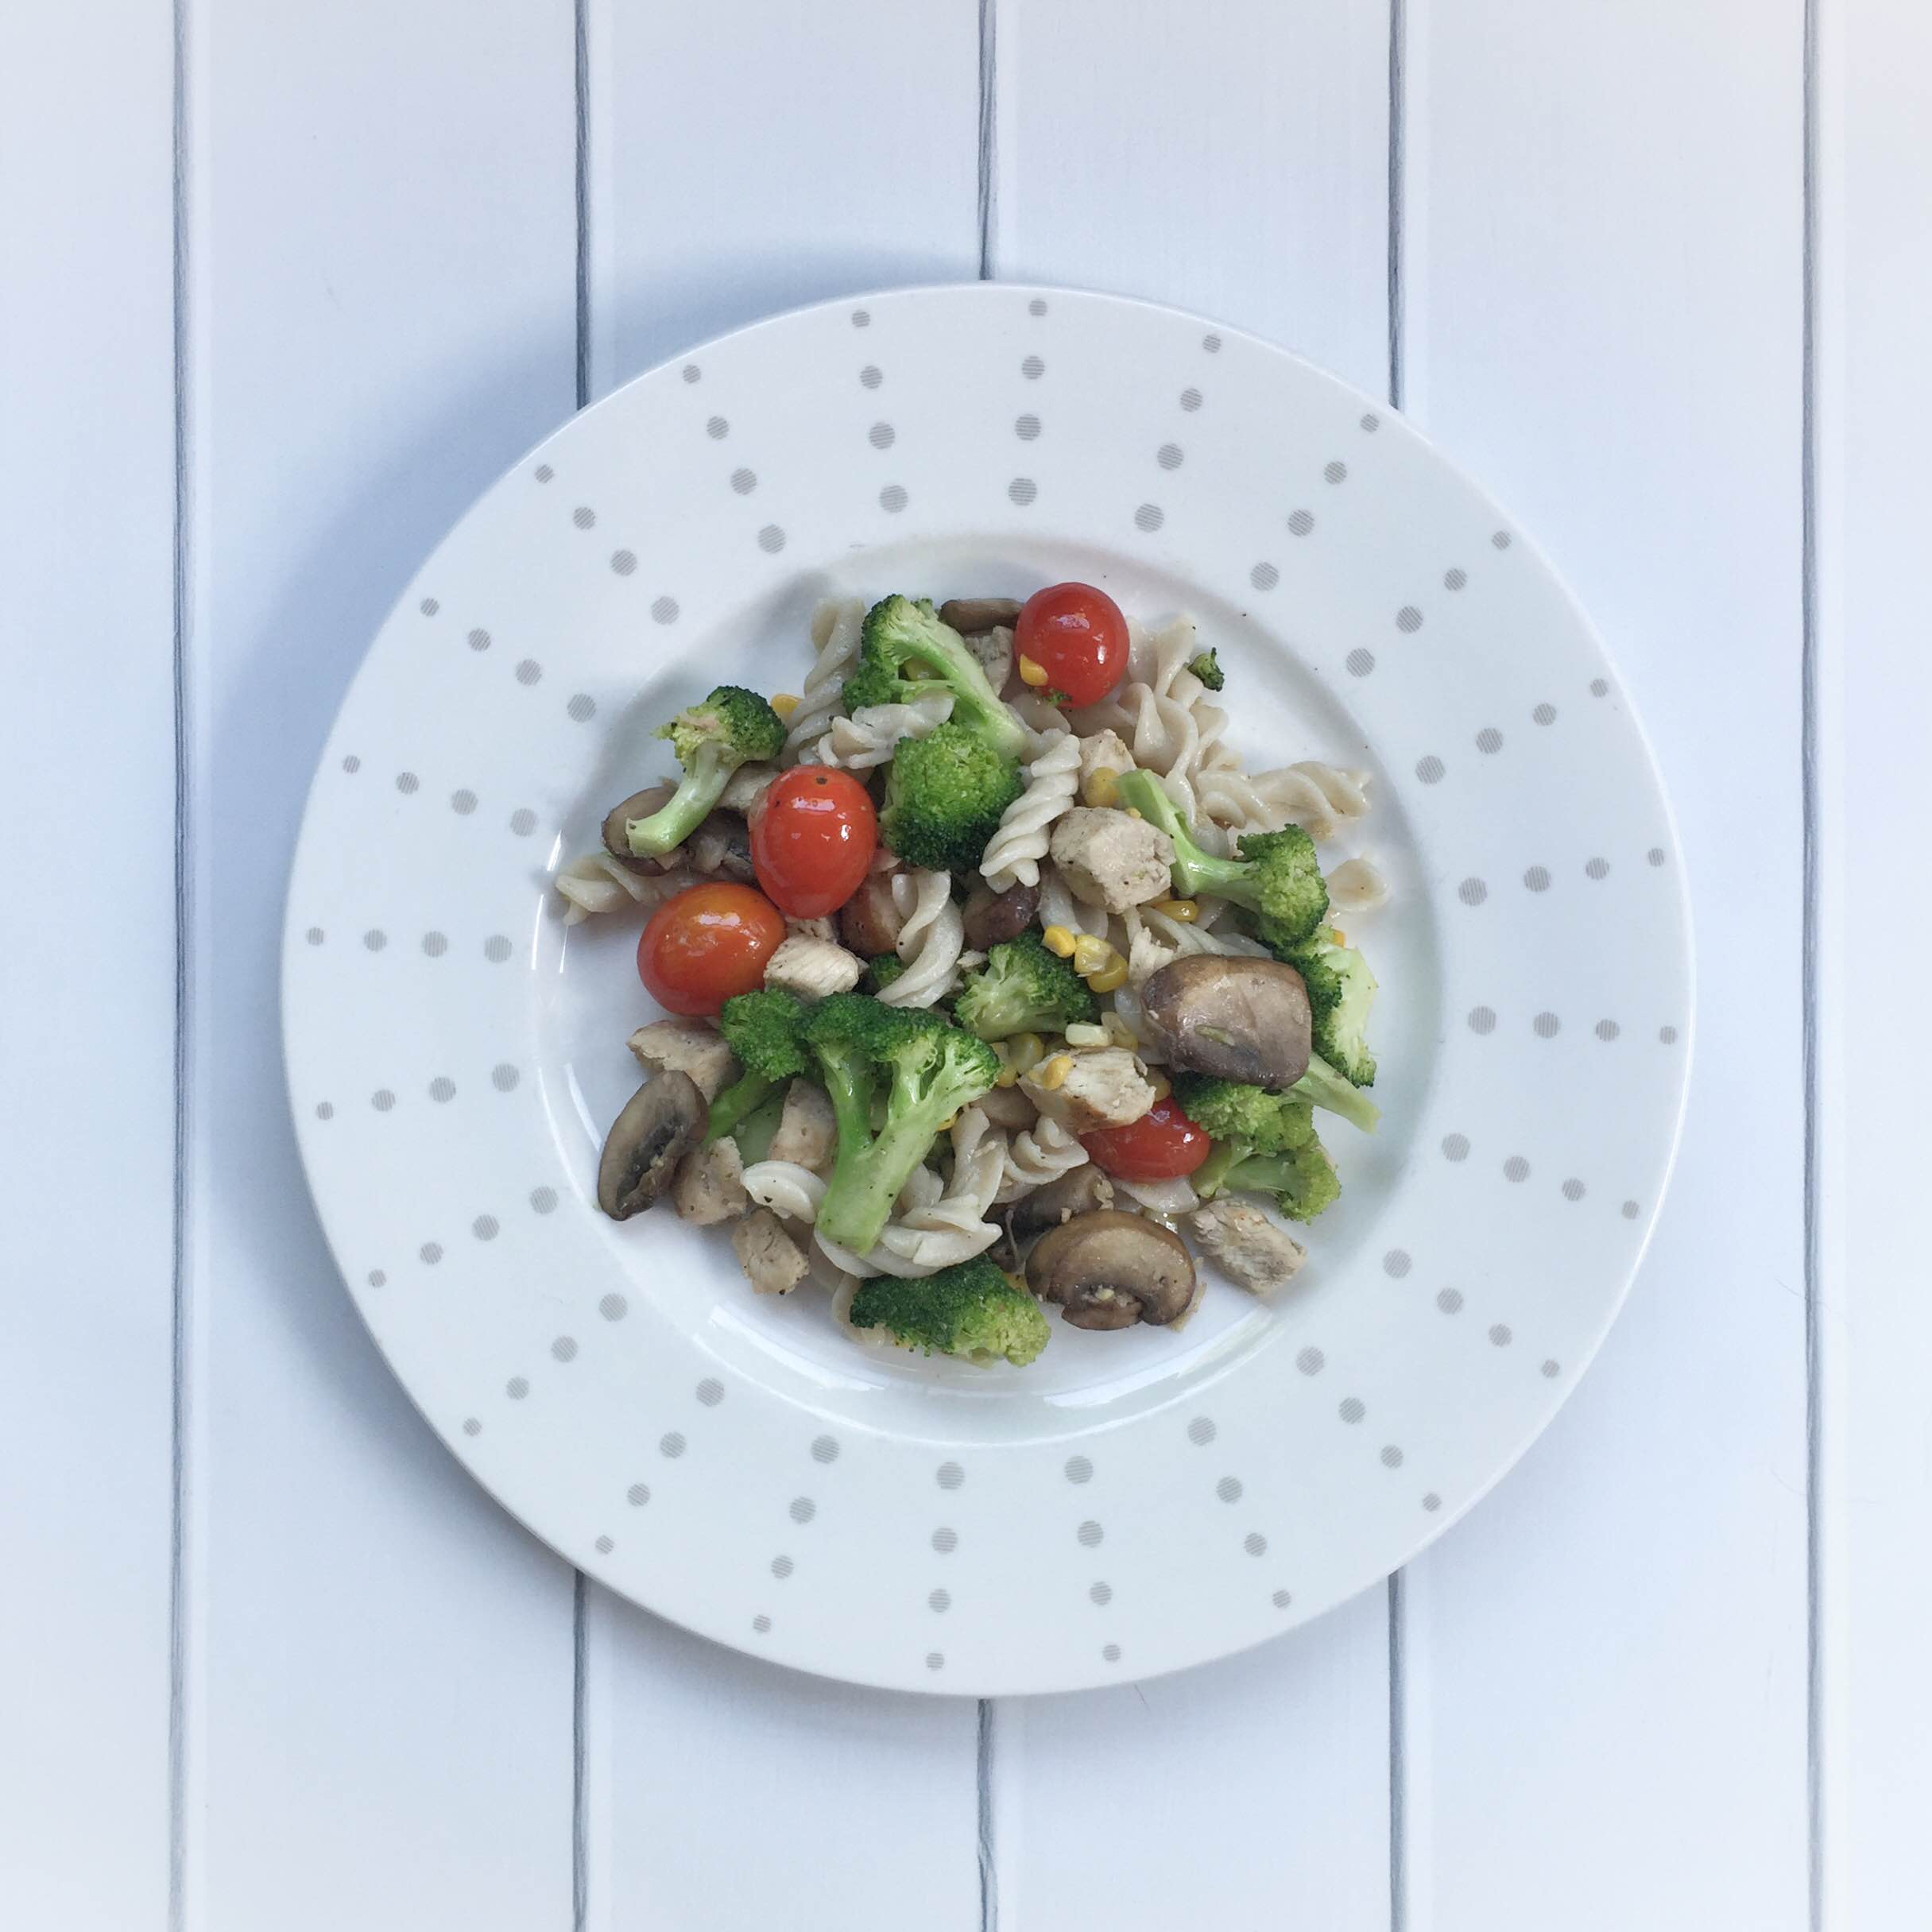 Simple summer pasta primavera | Garlic veggie pasta recipe | What's for dinner tonight? Try this super simple summer pasta recipe! GinaKirk.com @ginaekirk